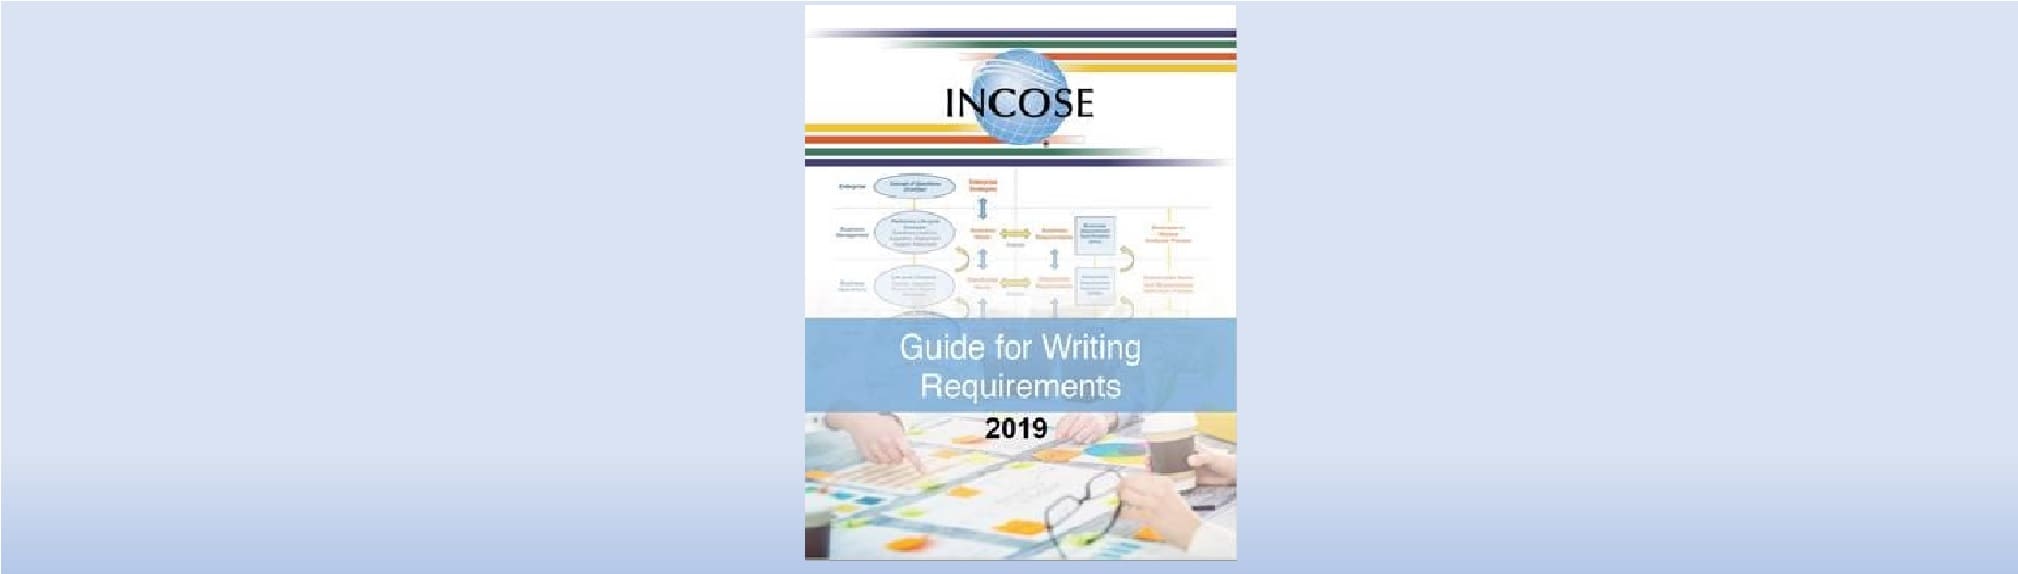 incose guide